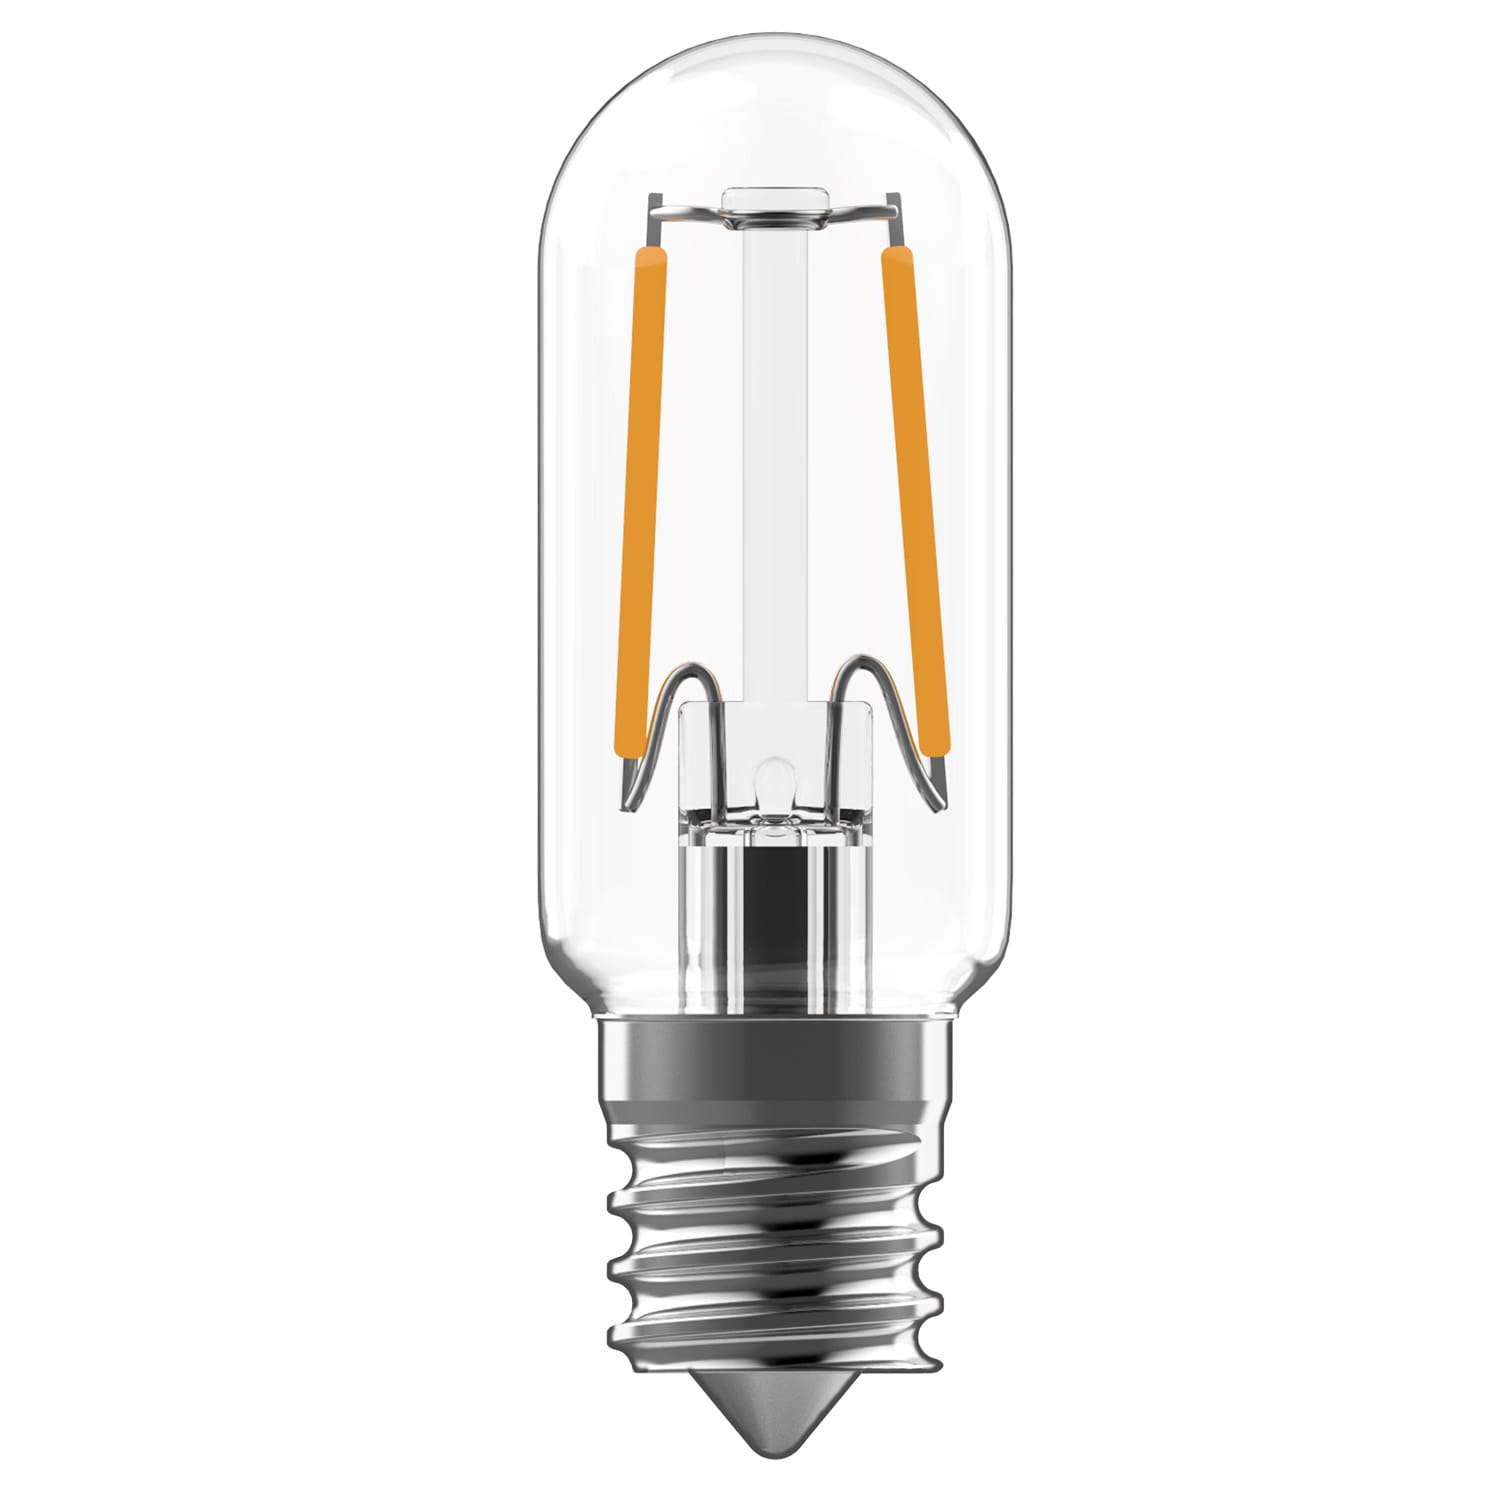 Led Range Hood Light Bulbs Replacement 40 Watt Equivalent Led Appliance  Bulb For